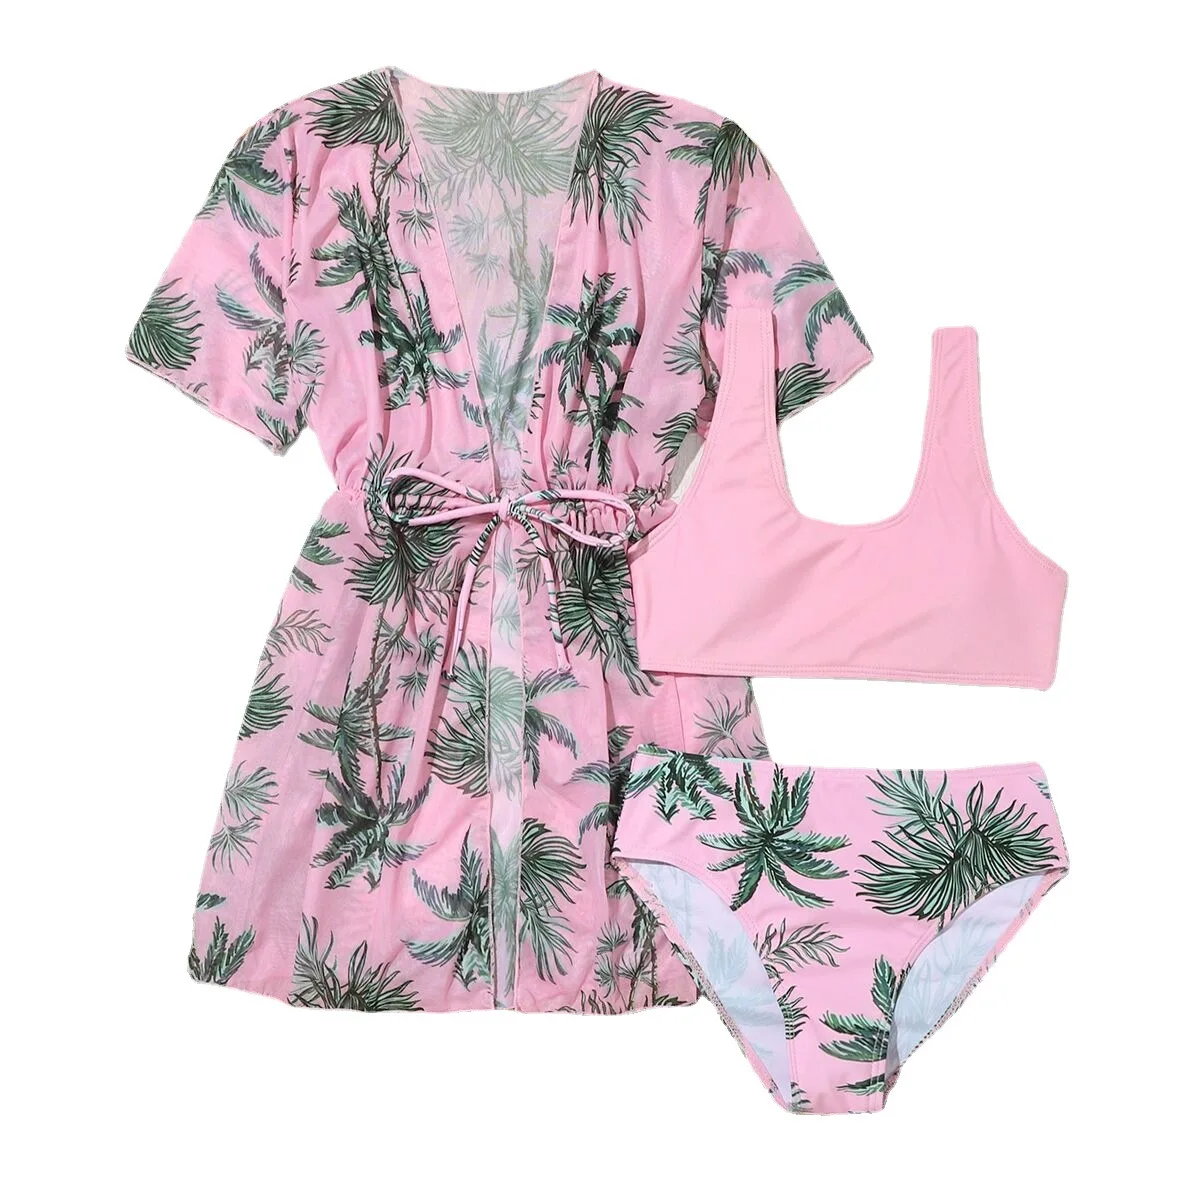 Girls 3pack Tropical Print Bikini Swimsuit with Mesh Cover Up 7-14 Years Children's Swimwear Kimono 2023 Swimming Suit Beachwear images - 6